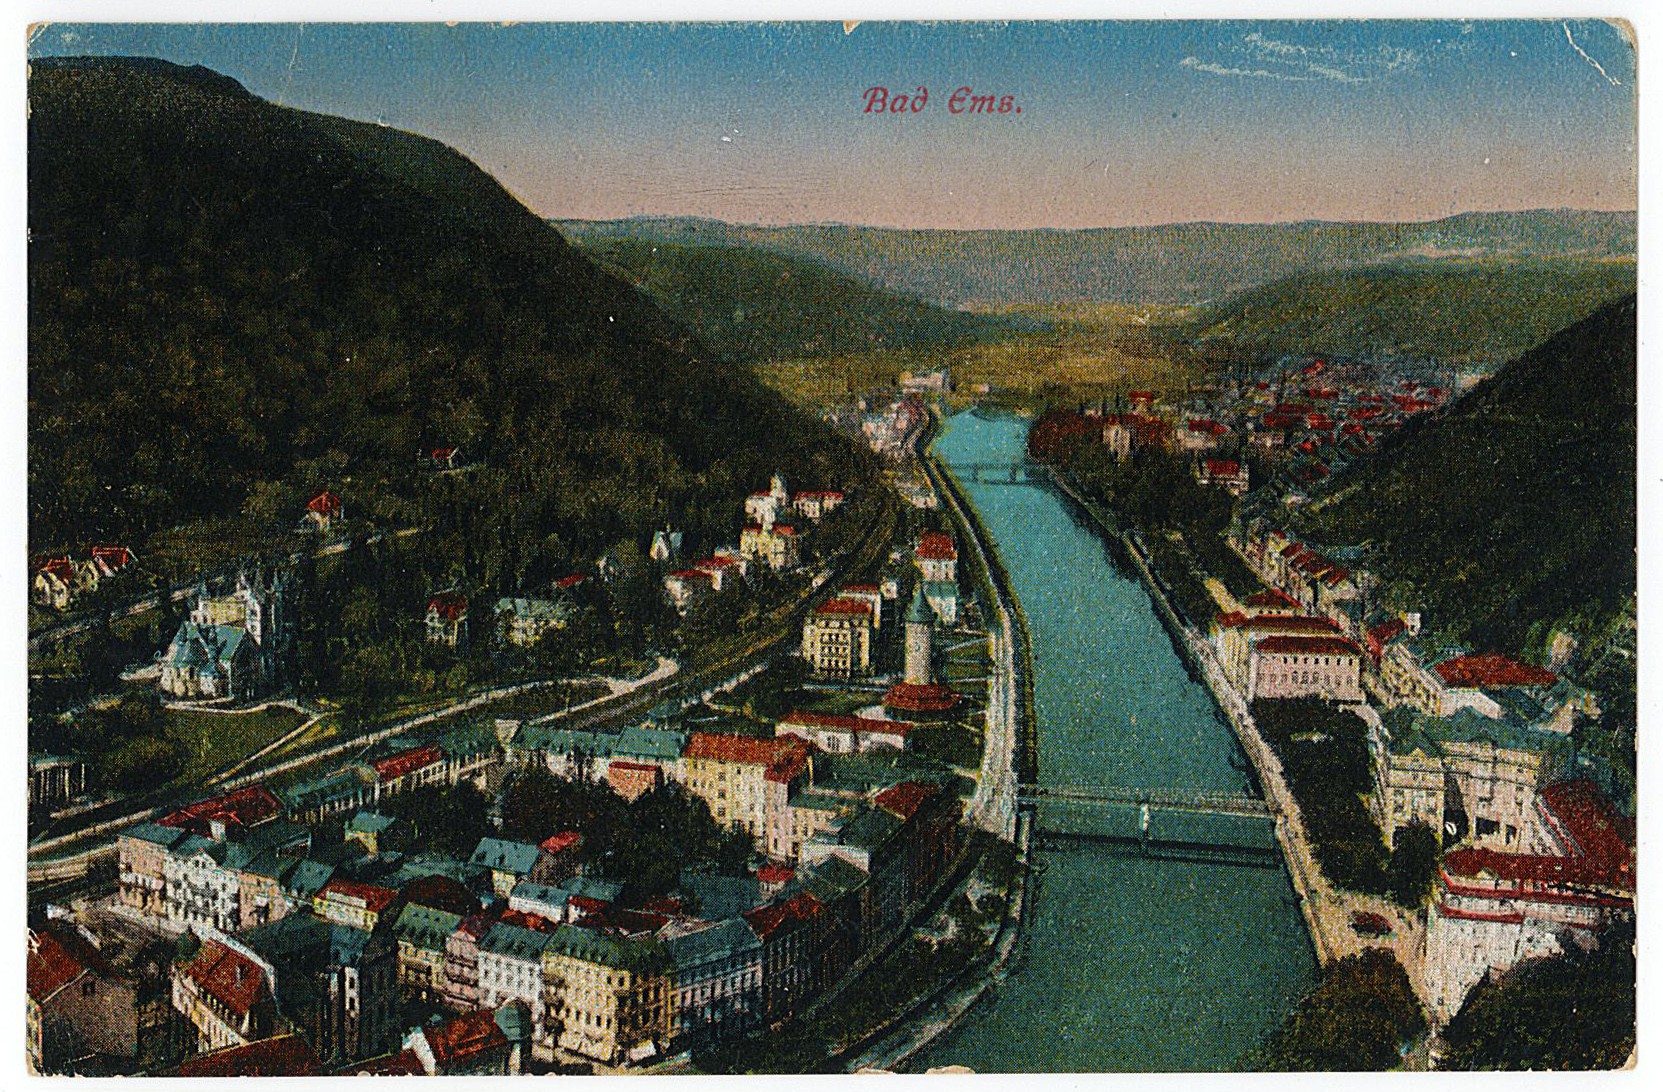 Postkarte von Erich Otto an seinen Vater Herrmann Otto, 23.10.1918 (Museum Wolmirstedt RR-F)